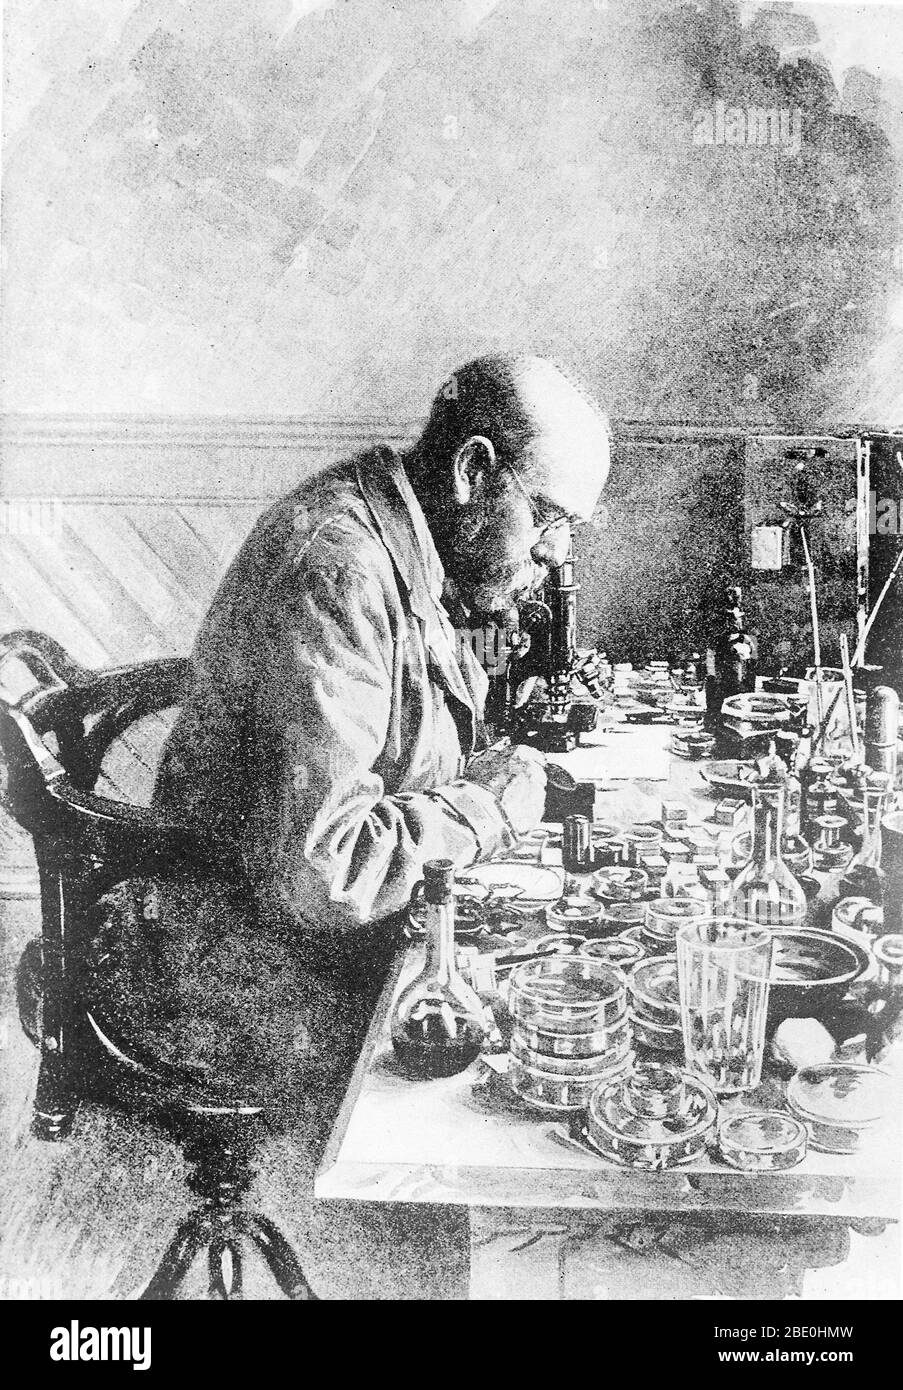 Heinrich Hermann Robert Koch (11 dicembre 1843 – 27 maggio 1910) è stato un . Come fondatore della moderna batteriologia, ha identificato gli agenti causativi della tubercolosi, del colera e dell'antrace e ha dato supporto sperimentale al concetto di malattia infettiva, che includeva esperimenti su esseri umani e animali. Koch ha creato e migliorato le tecnologie e le tecniche di laboratorio, e ha fatto le scoperte chiave nella salute pubblica. Per la sua ricerca sulla tubercolosi, Koch ha ricevuto il Premio Nobel in Fisiologia o Medicina nel 1905. Nel 1910, Koch subì un attacco di cuore e non fece mai un attacco Foto Stock